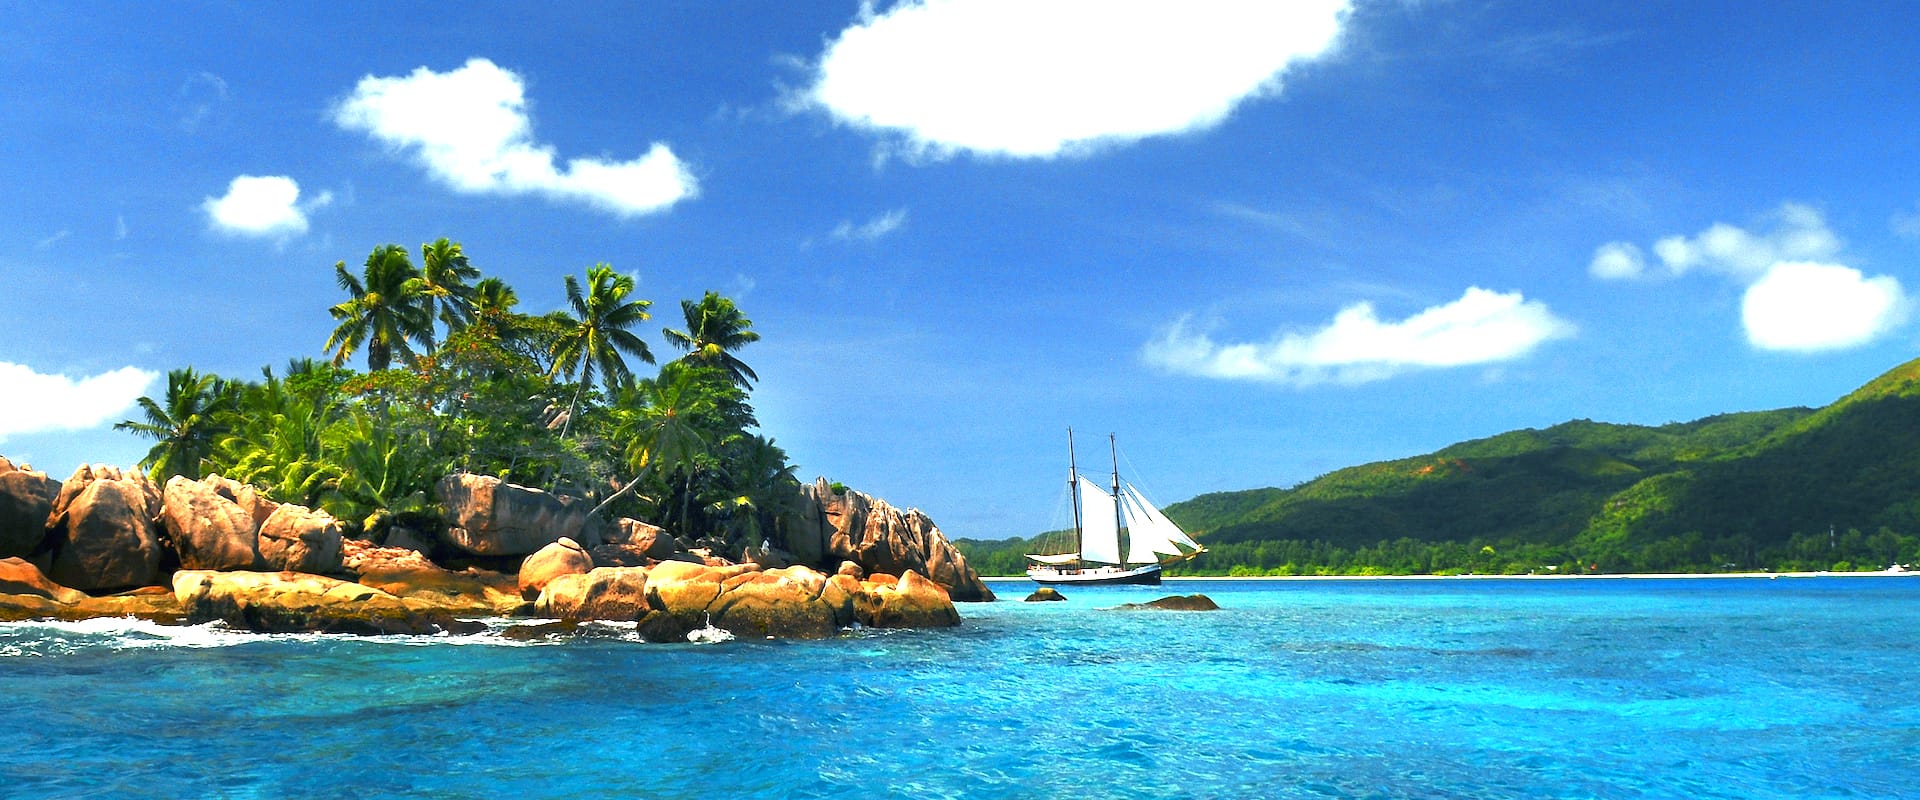 7 Liveaboards in Seychelles - LiveAboard.com